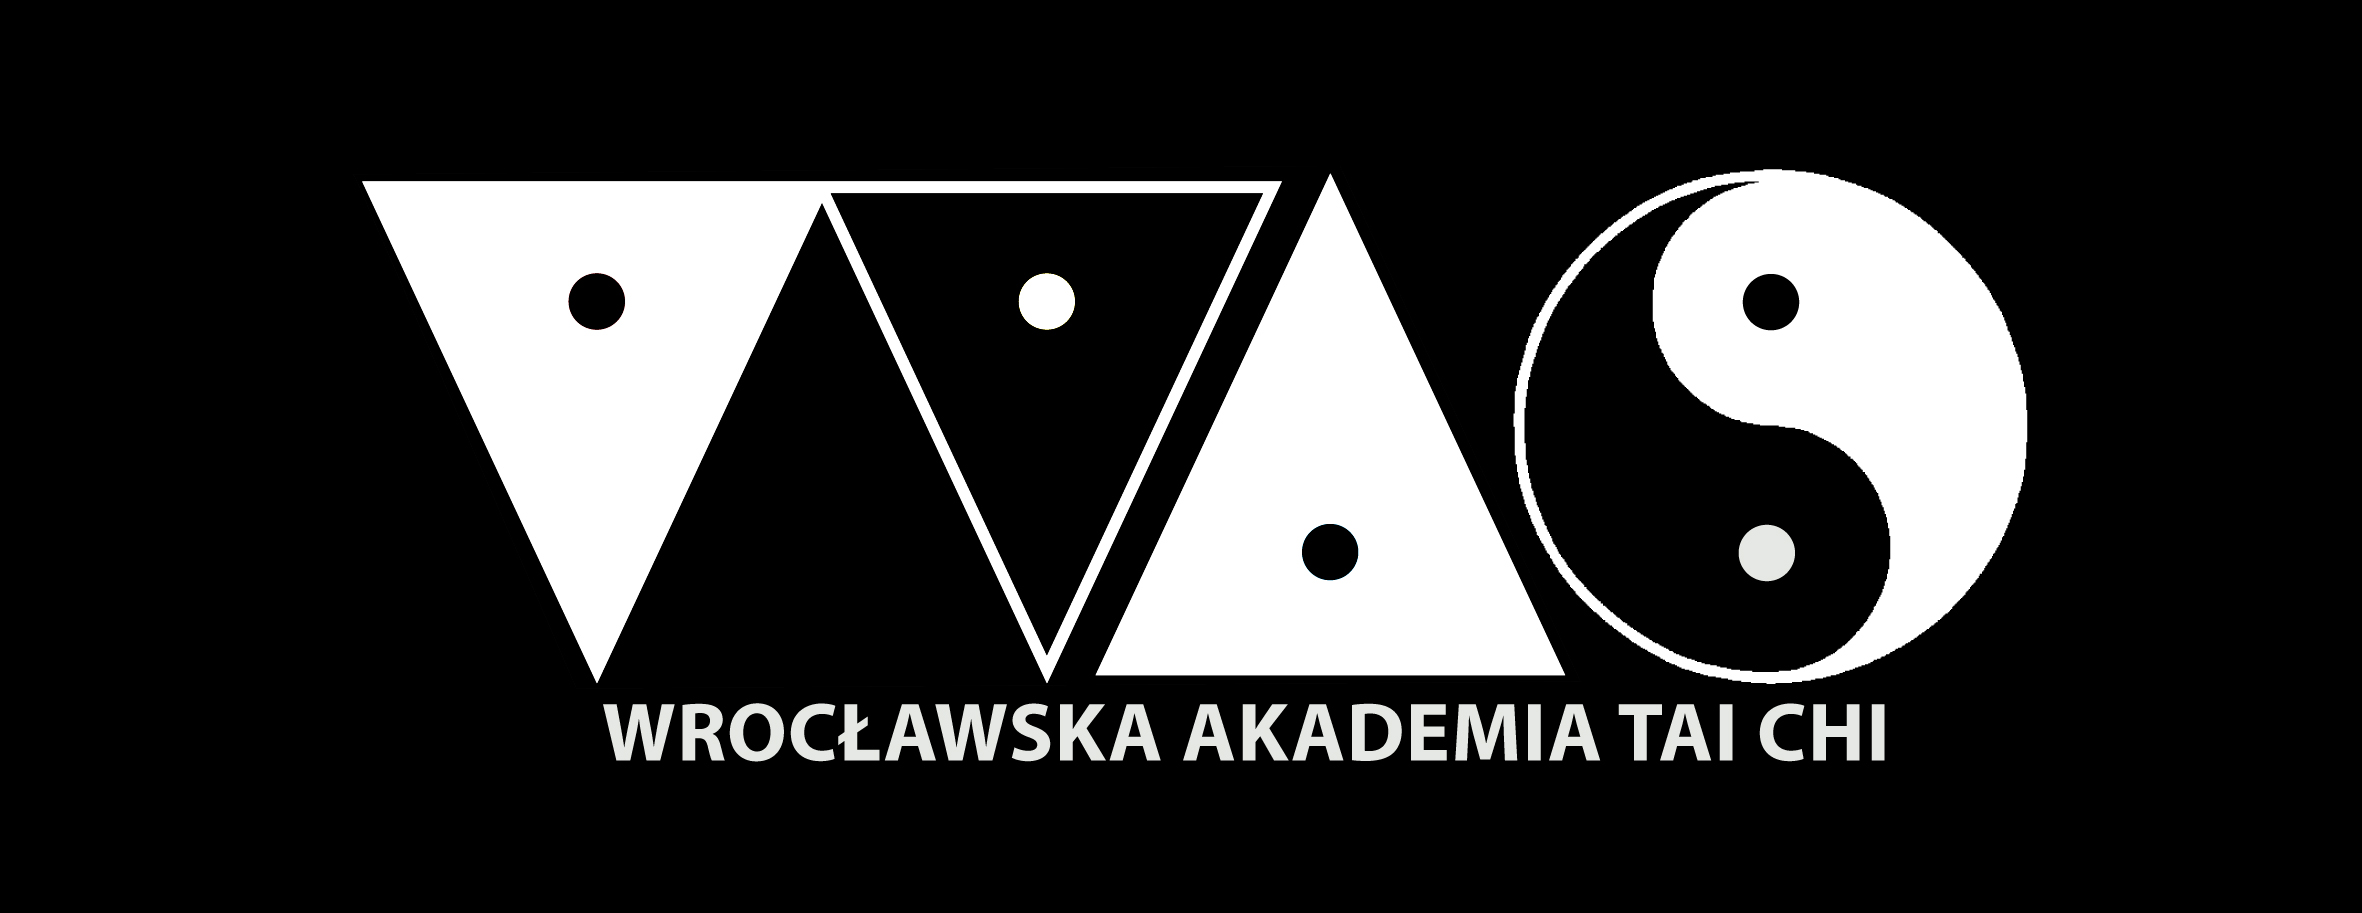 Wroslaw logo.jpg